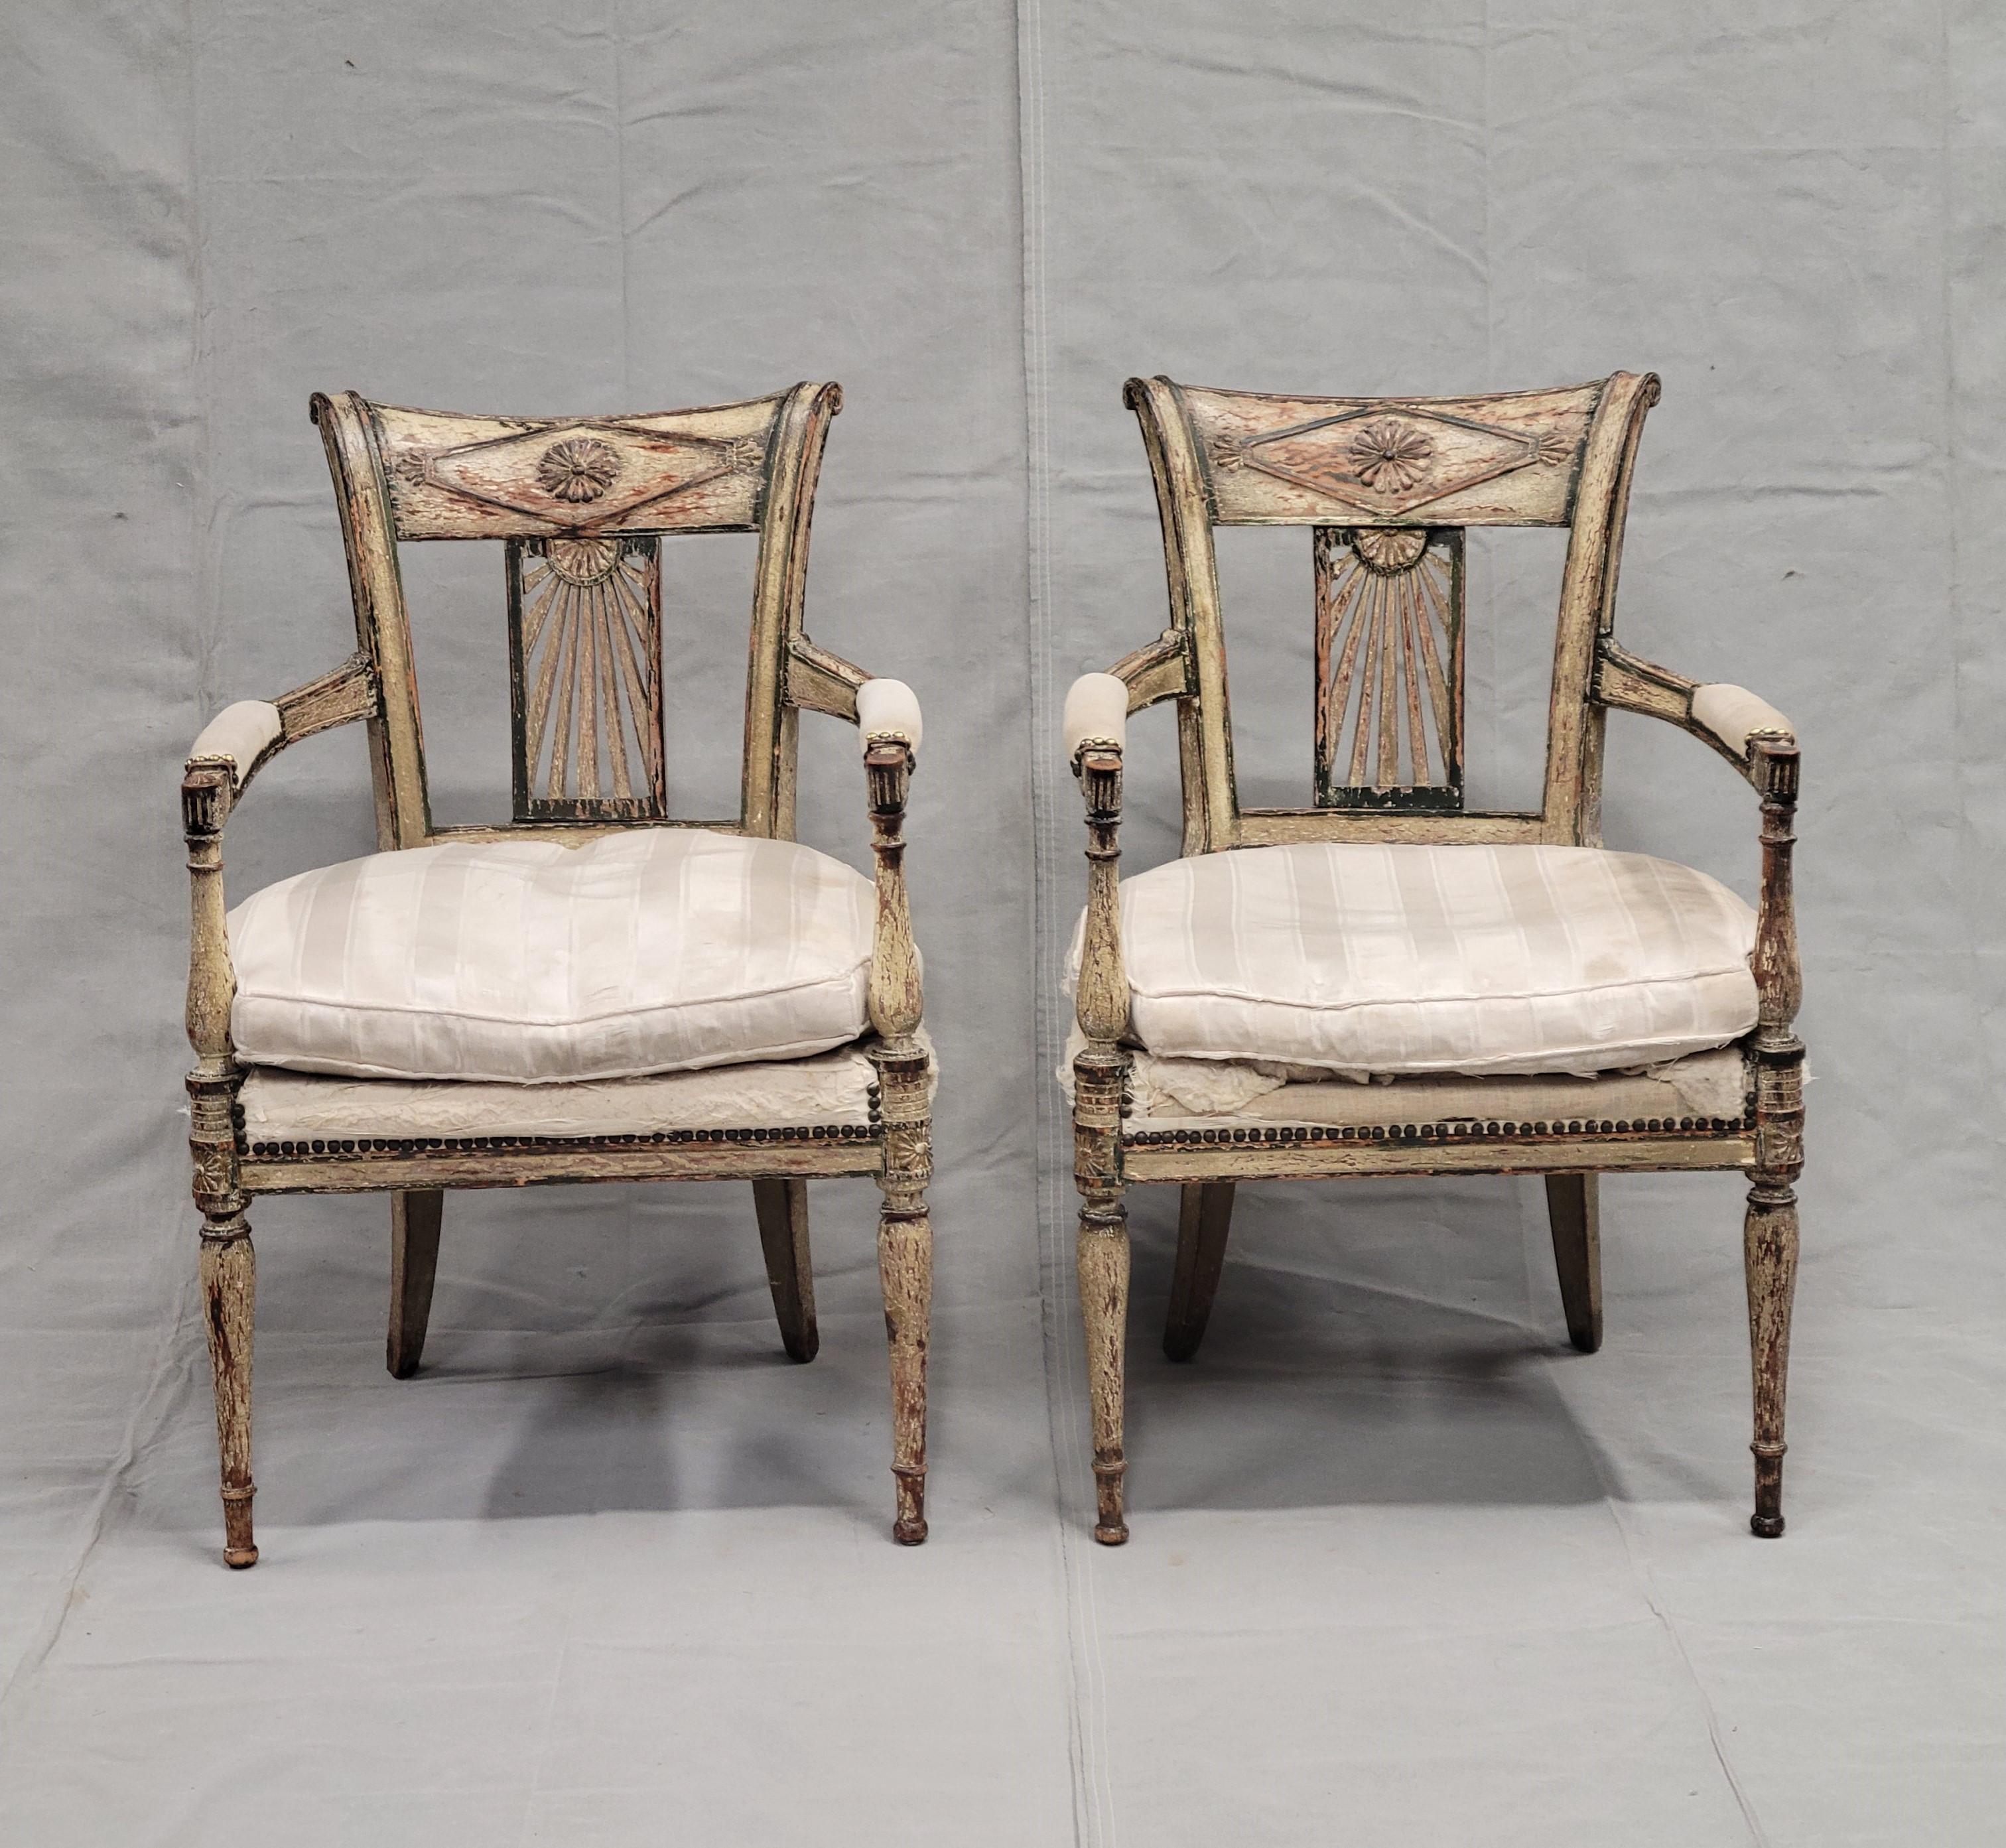 Superbe paire de fauteuils anciens de style Louis XVI peints par la Maison Jansen, avec coussins en duvet et vieilles agrafes de tapisserie d'ameublement. Il est très rare de trouver une paire assortie de cet âge. La surface peinte en couches dans